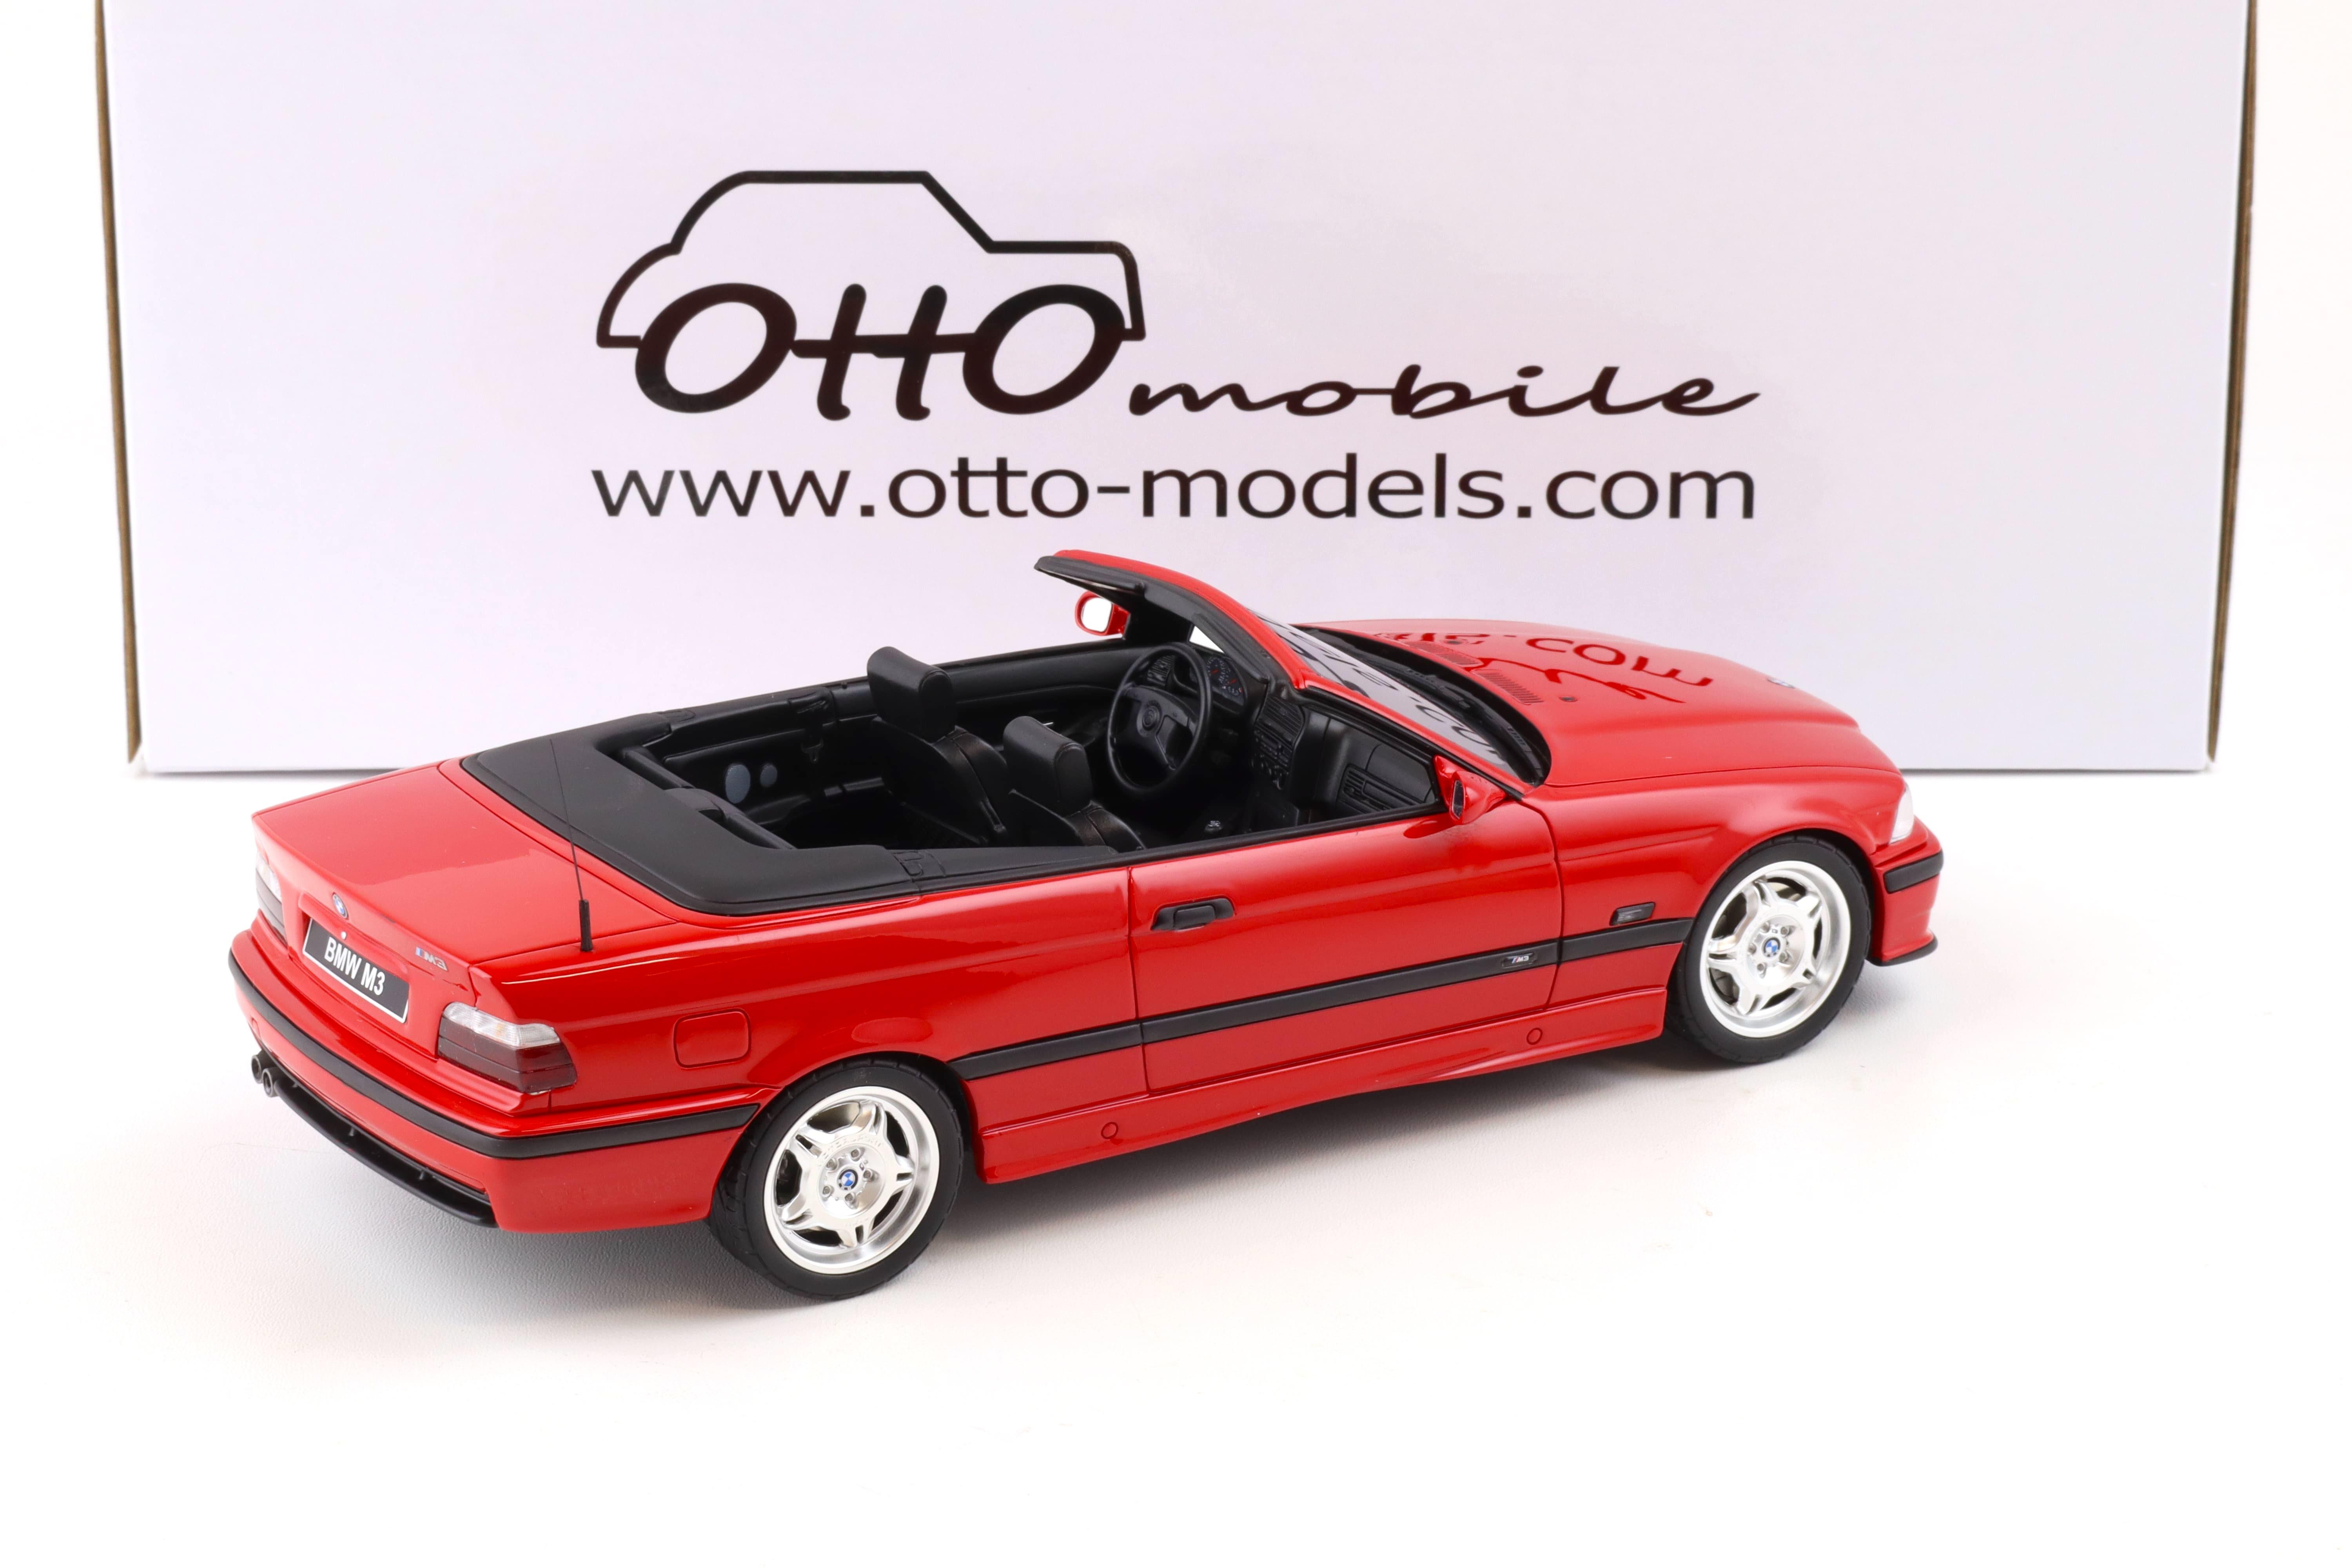 1:18 OTTO mobile OT1048 BMW M3 (E36) Convertible red 1995